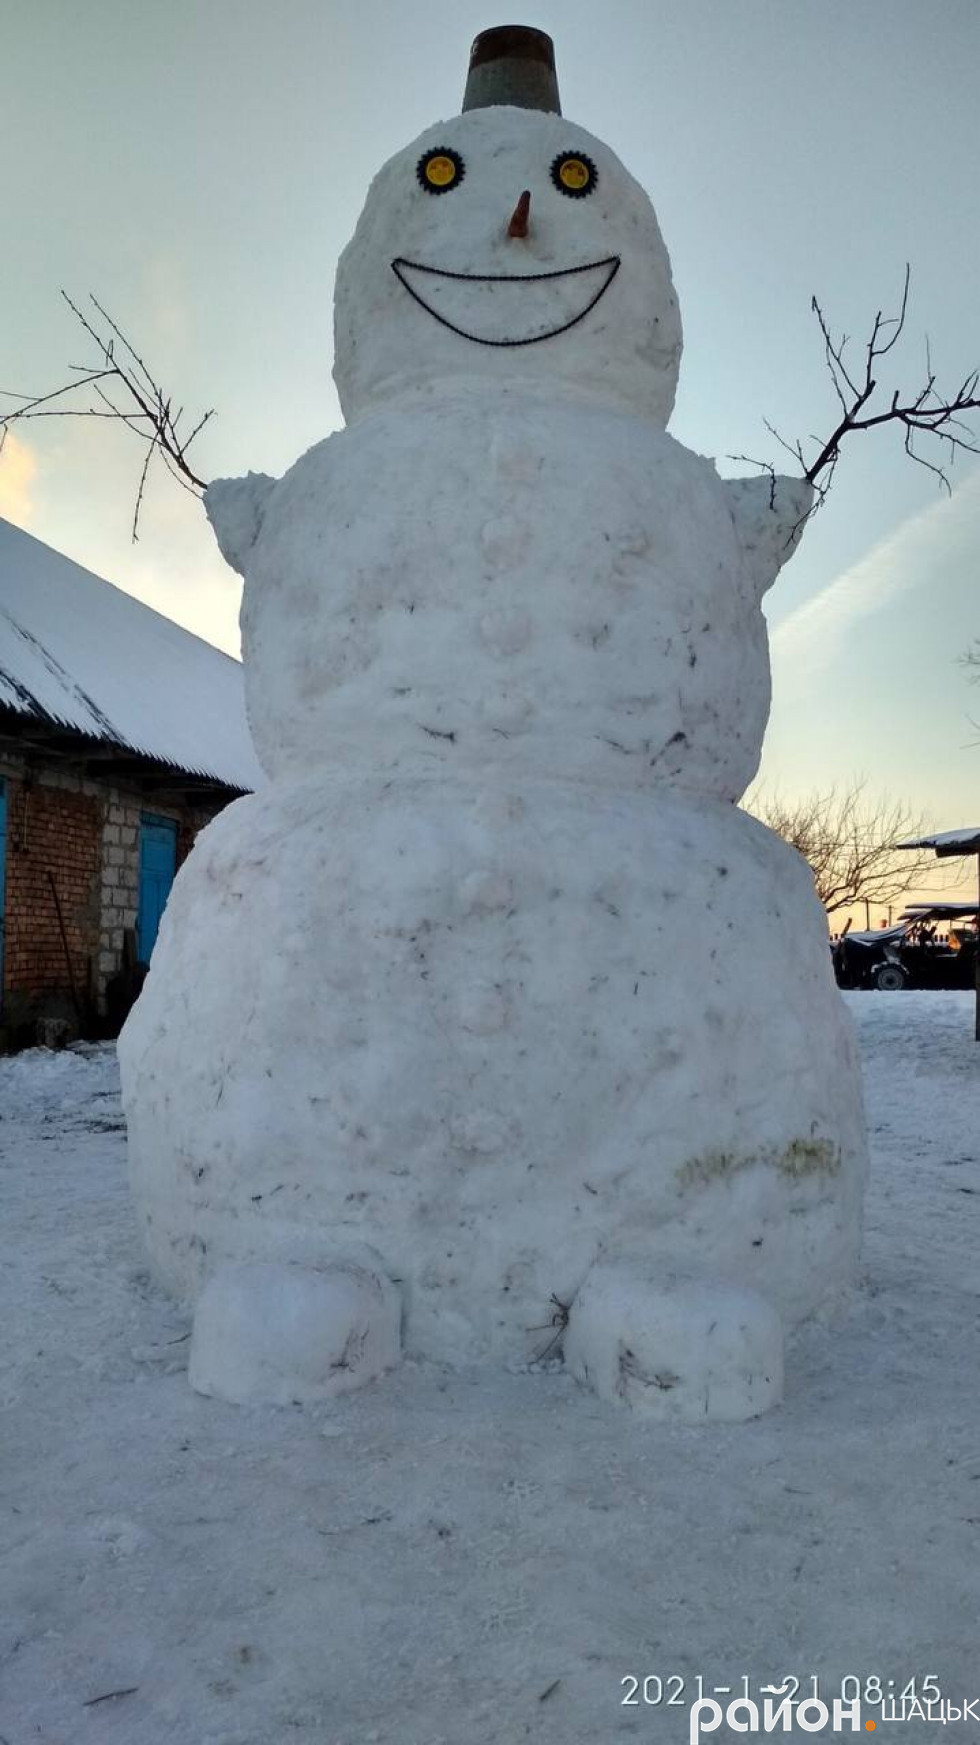 Очі – з коліс, усмішка – з ланцюга: у селі на Волині зліпили величезного сніговика (фото)